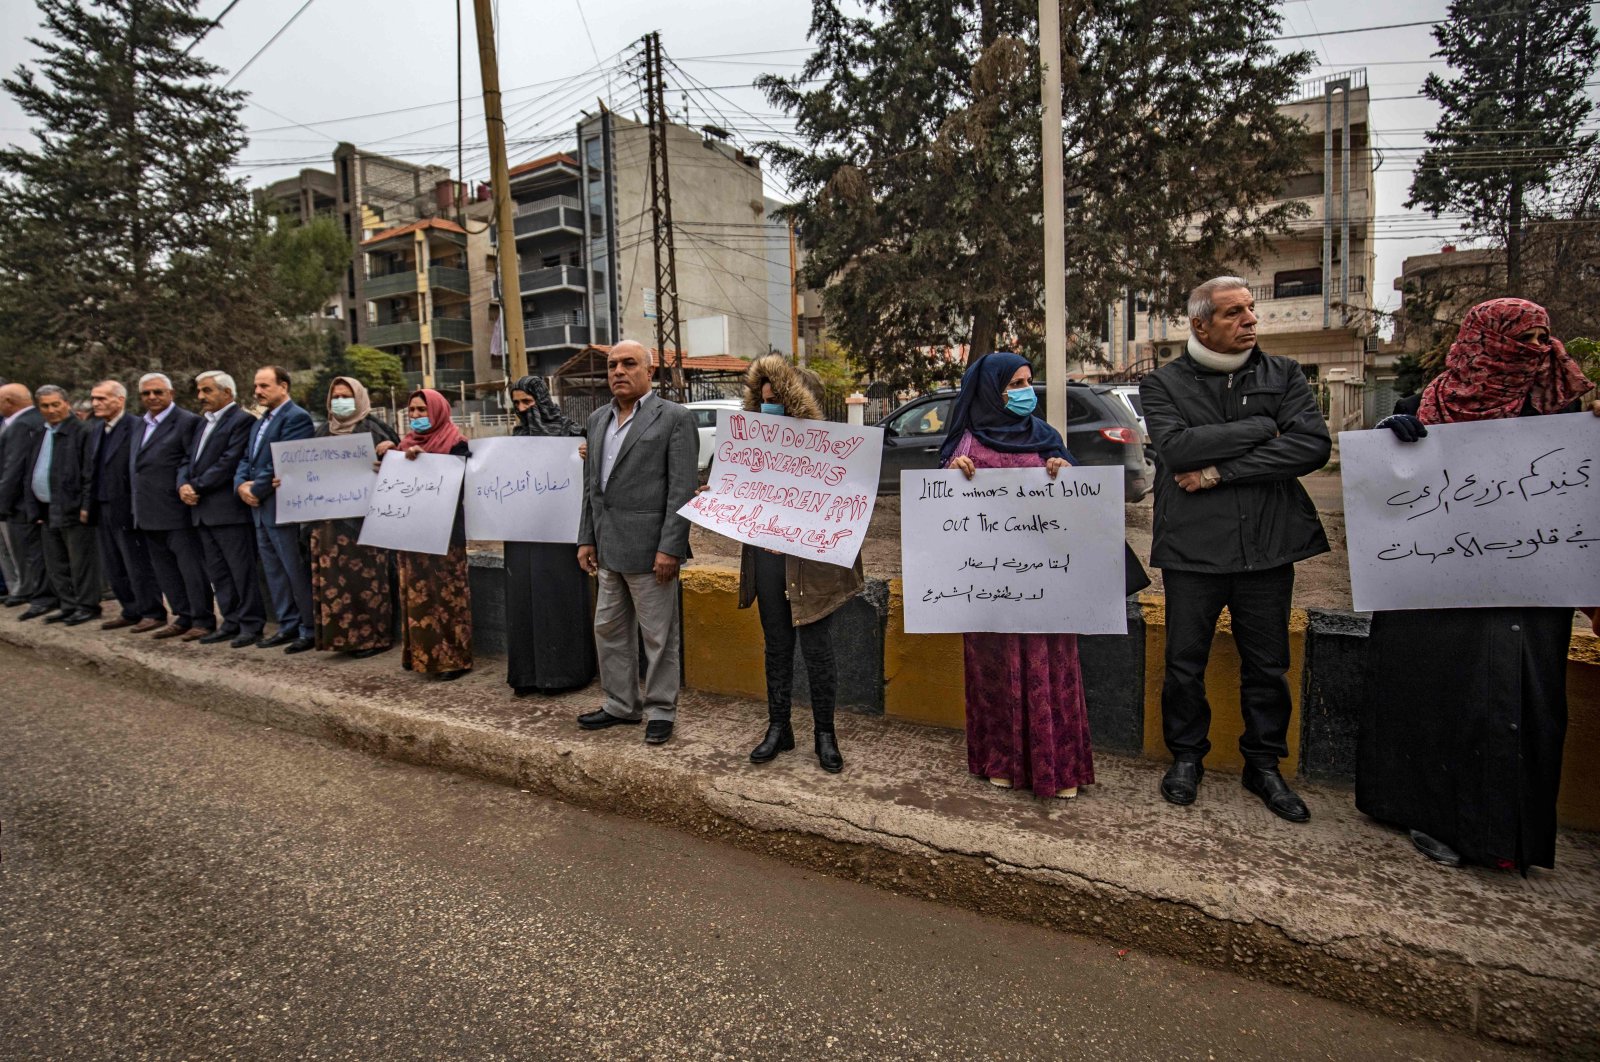 Orang tua Kurdi memprotes penculikan anak-anak oleh YPG/PKK di Suriah